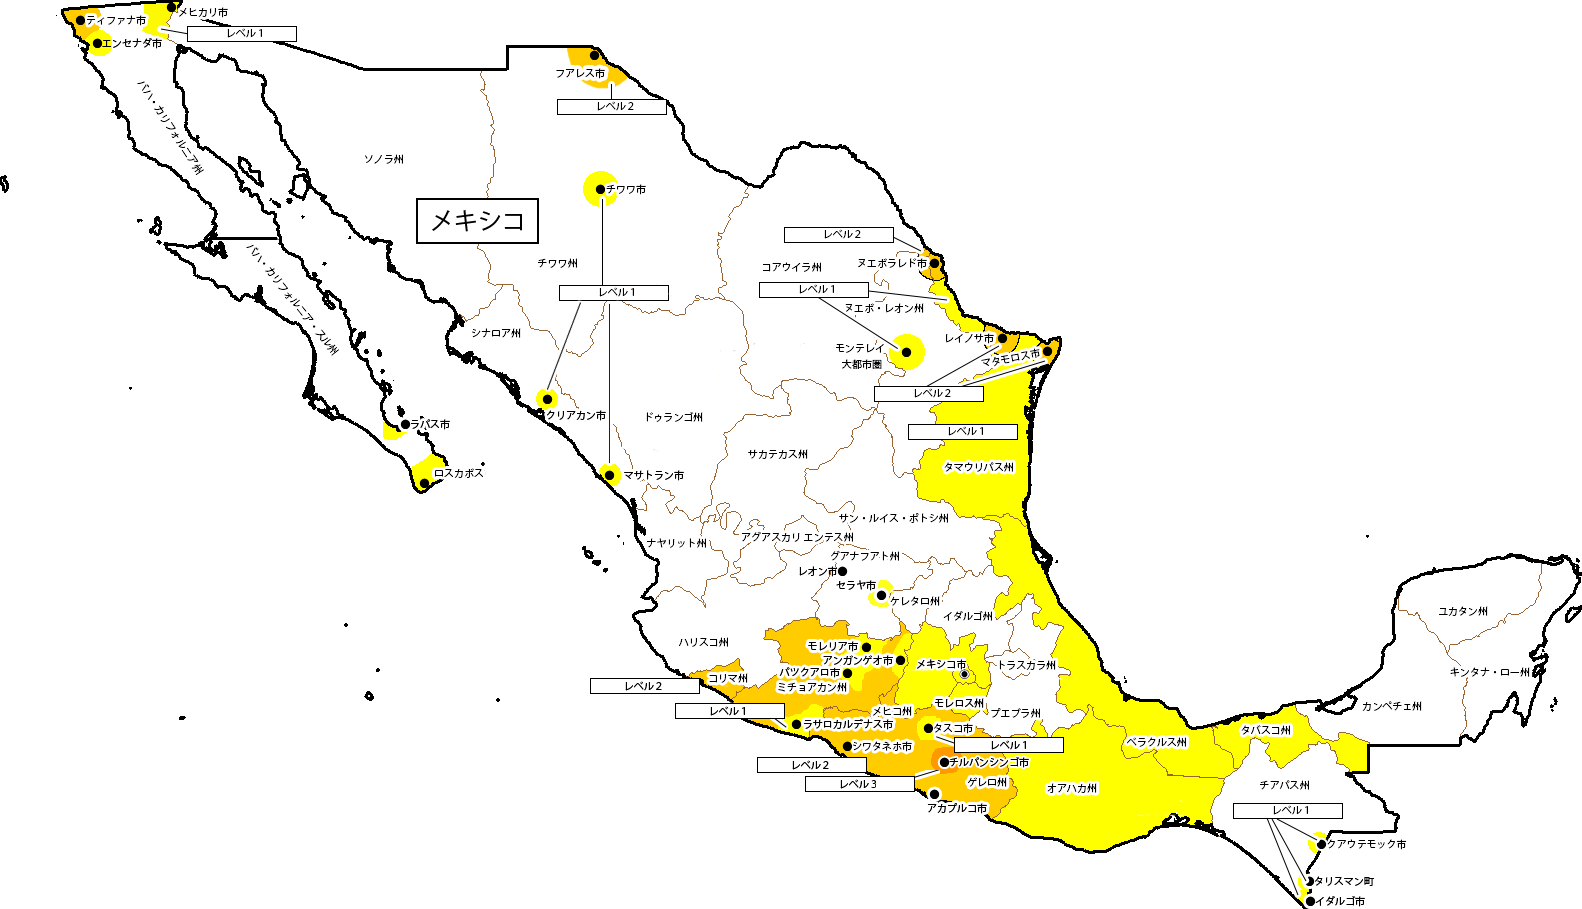 メキシコ危険・スポット・広域情報